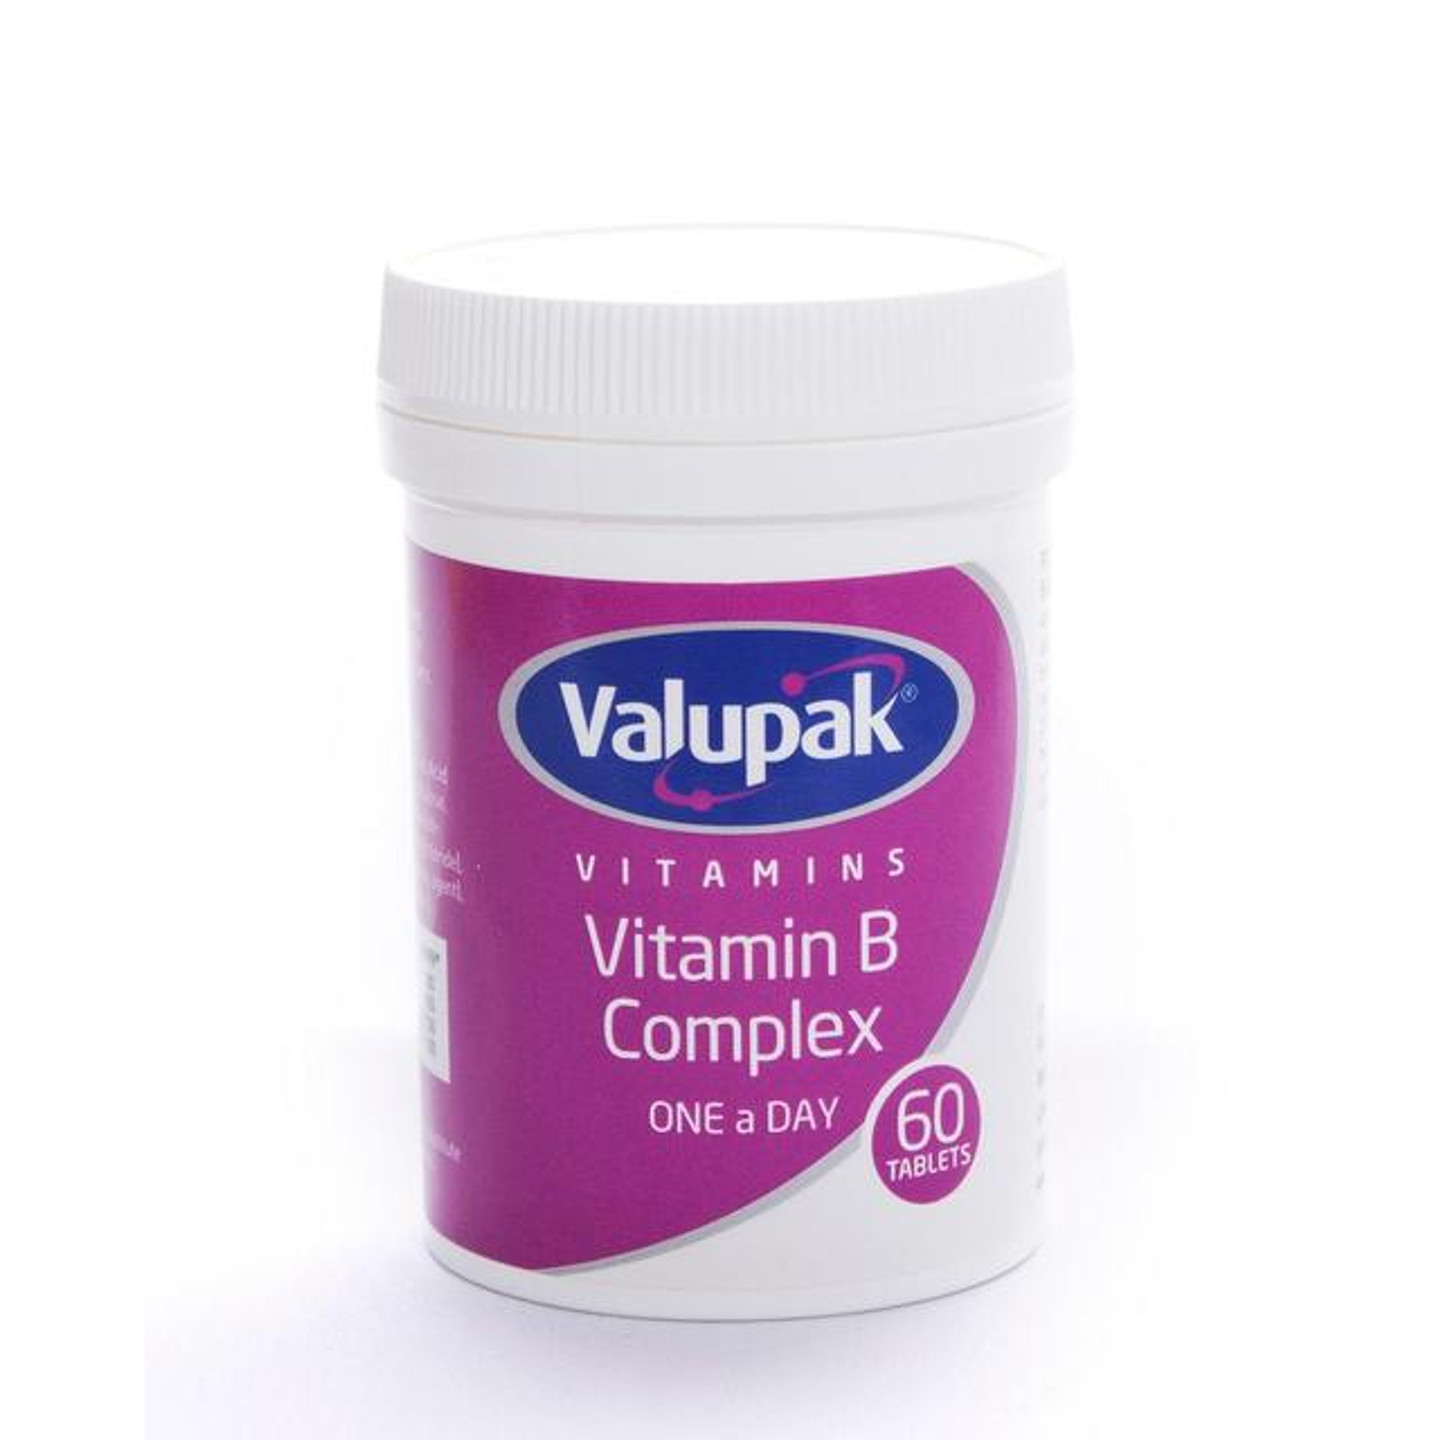 Valupak vitamin B complex